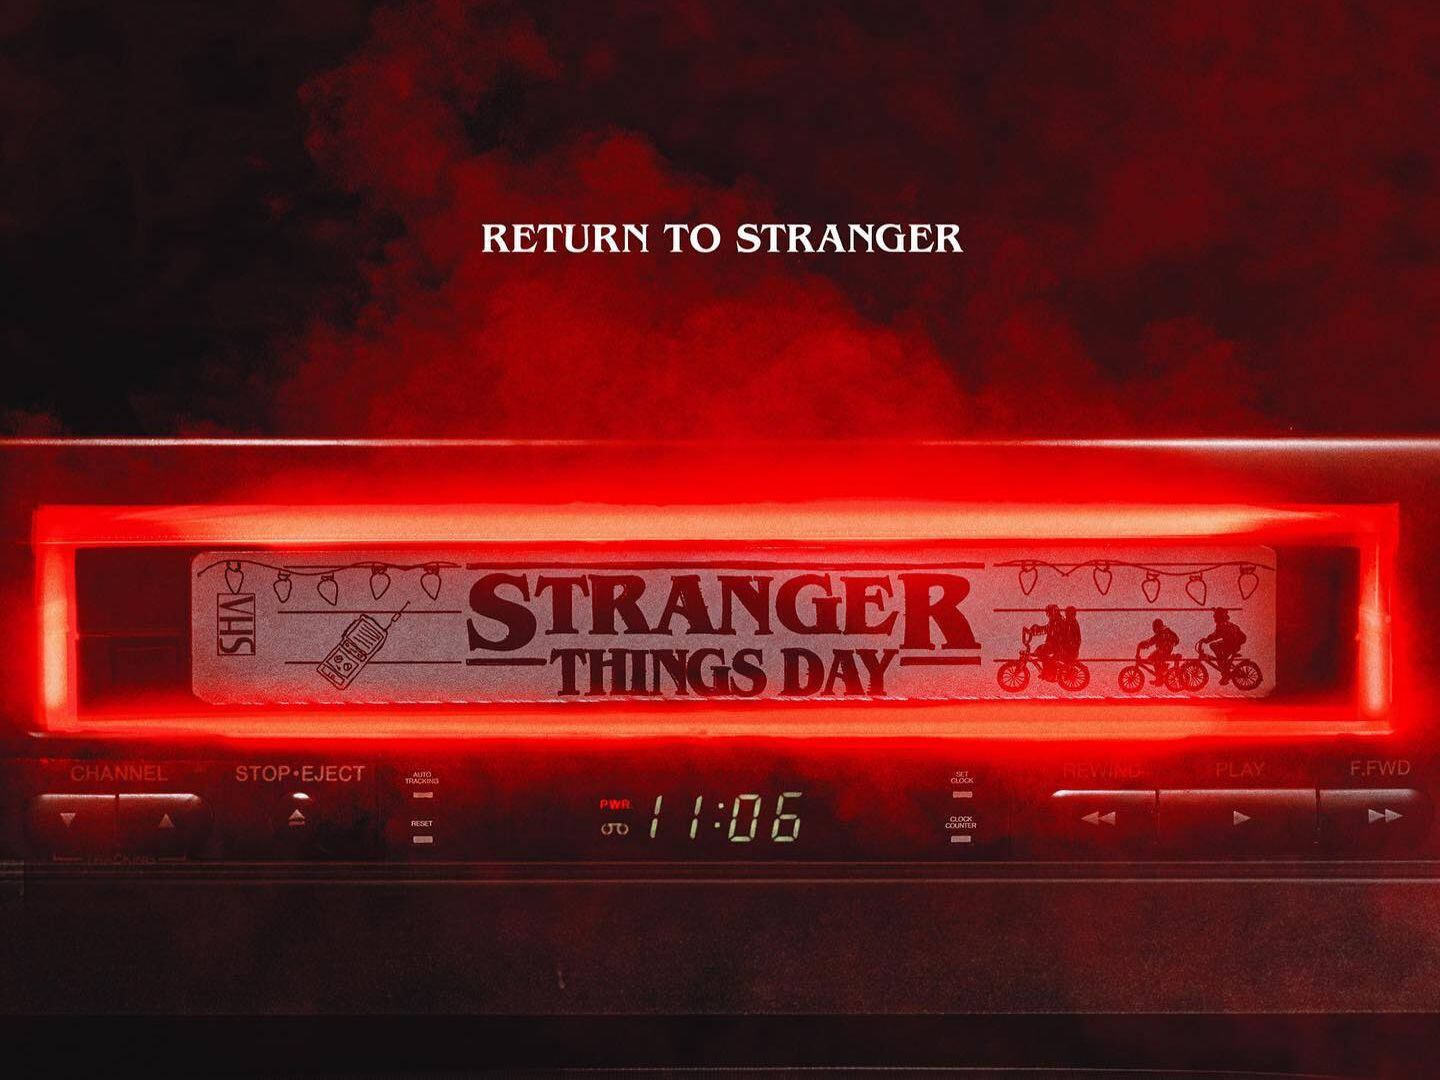 Stranger Things Day é comemorado no dia 6 de novembro; entenda